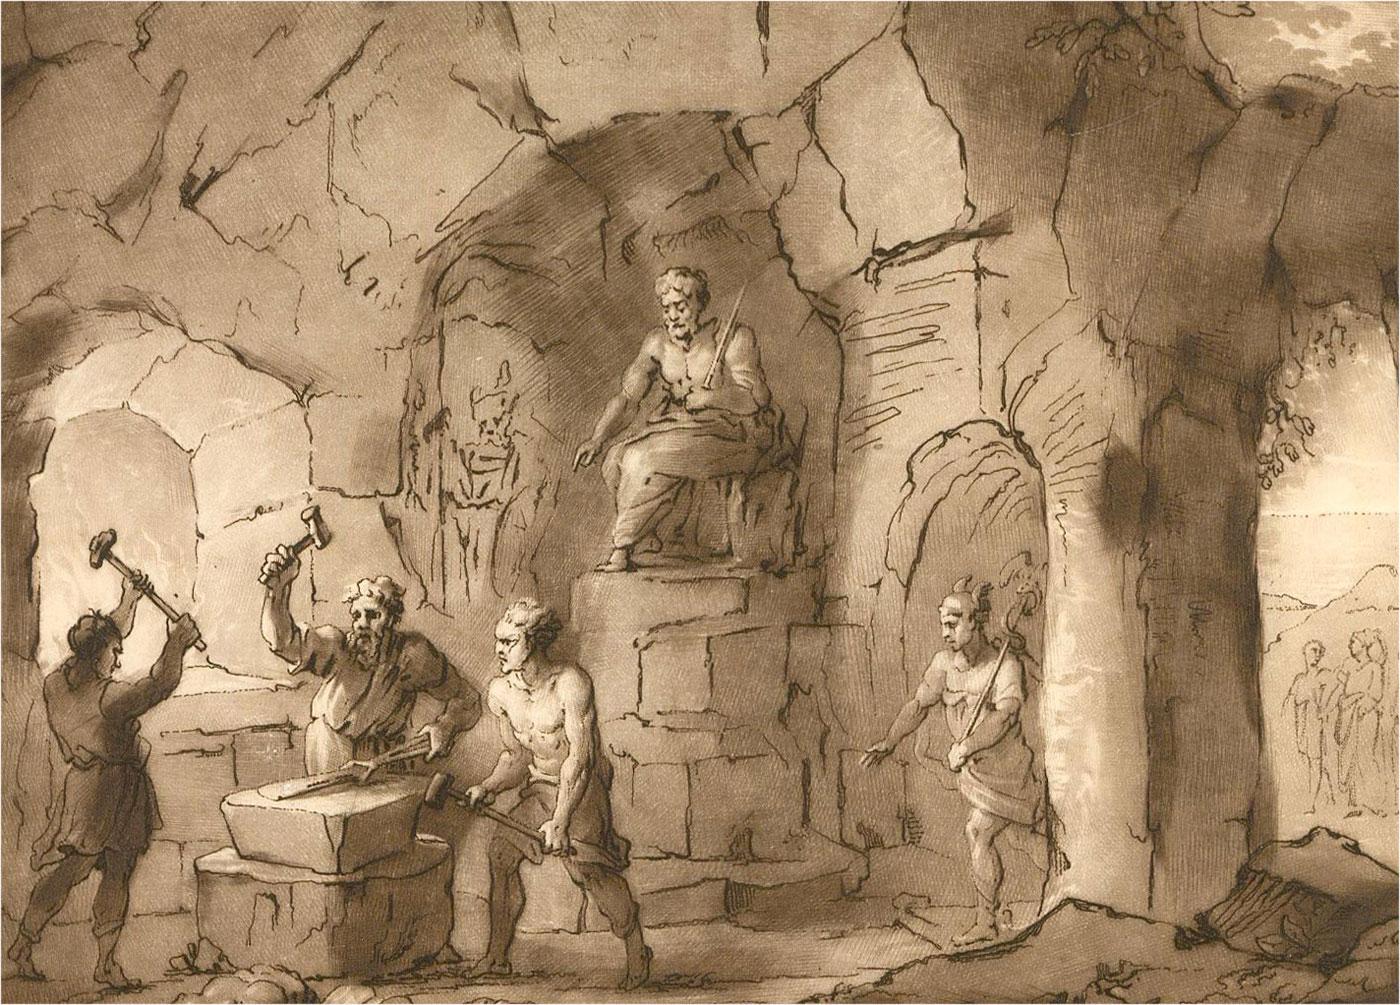 Richard Earlom nach Lorrain - 1802 Radierung, Liber Vertatis Landschaft Nr. 7 (Braun), Interior Print, von Richard Earlom after Lorrain